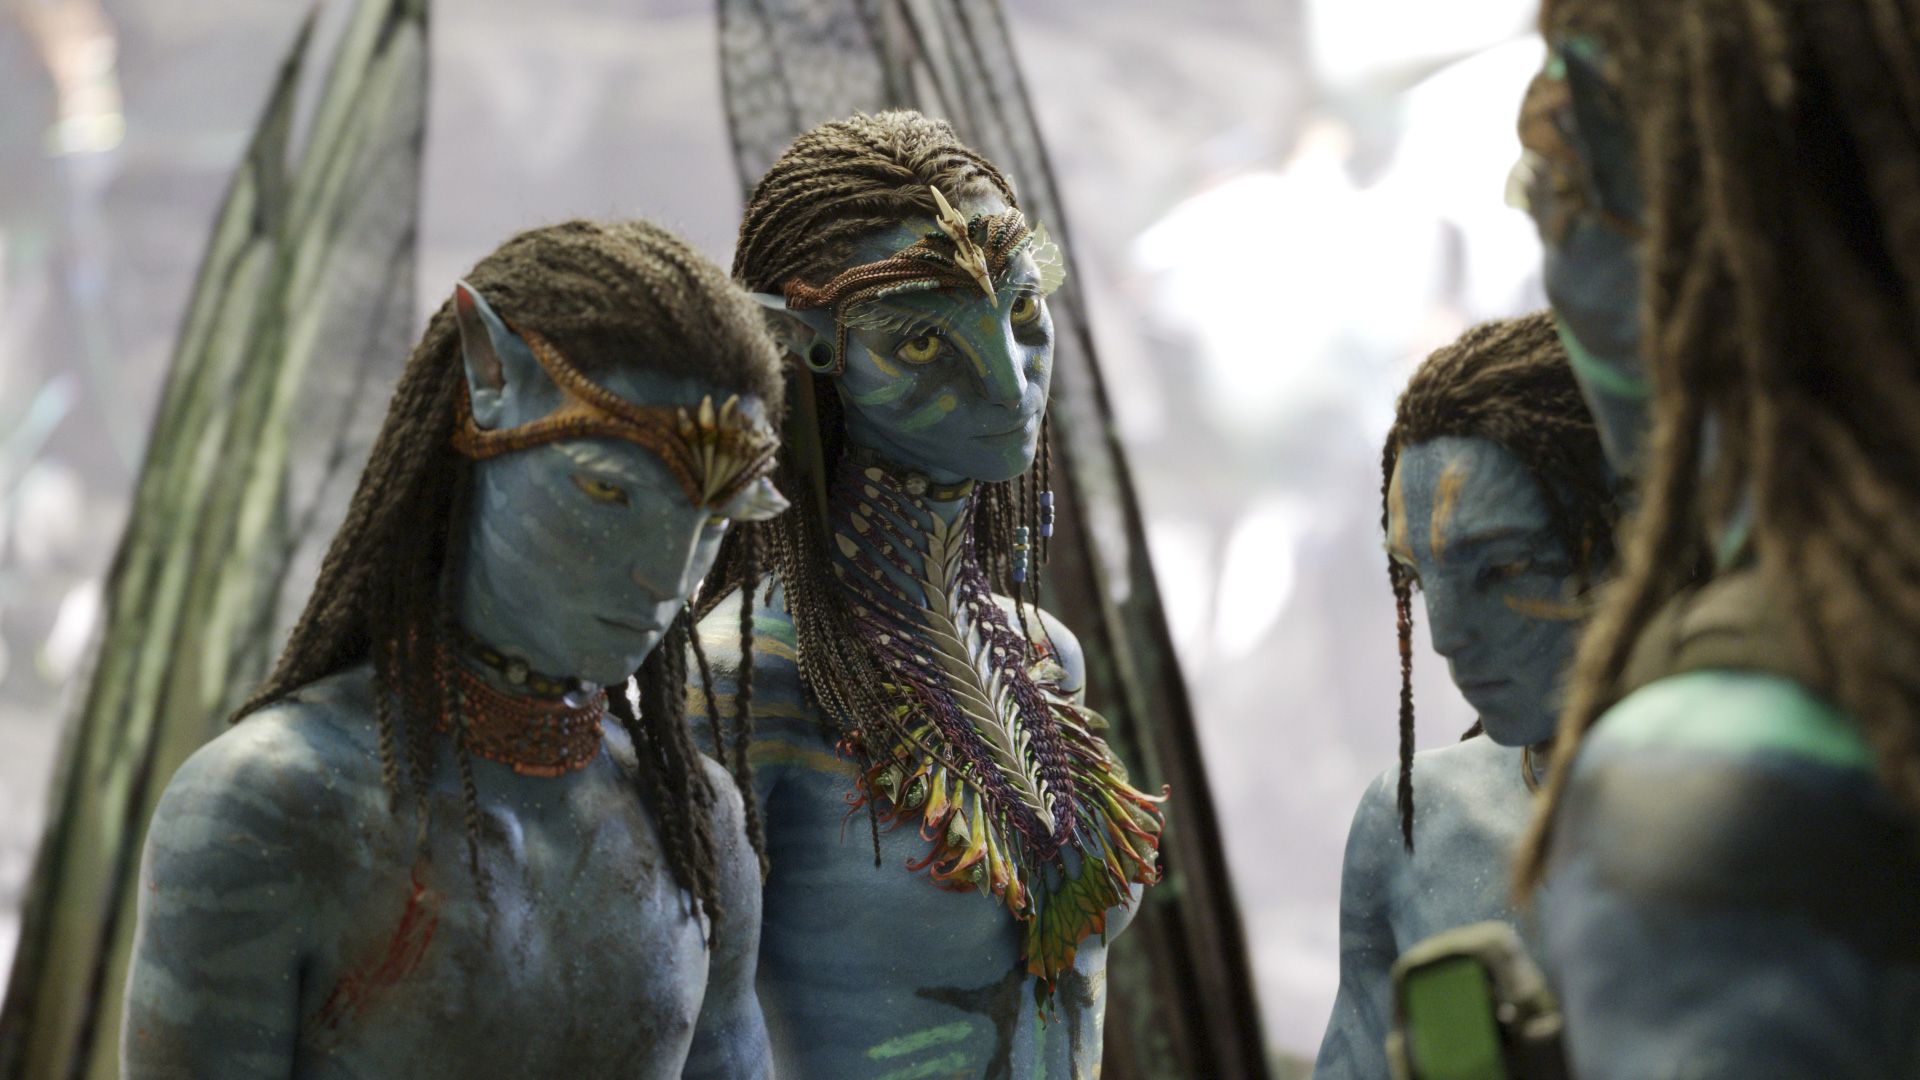  Sam Worthington y Zoe Saldaña vuelven a triunfar con "Avatar: el camino del agua". (Disney)